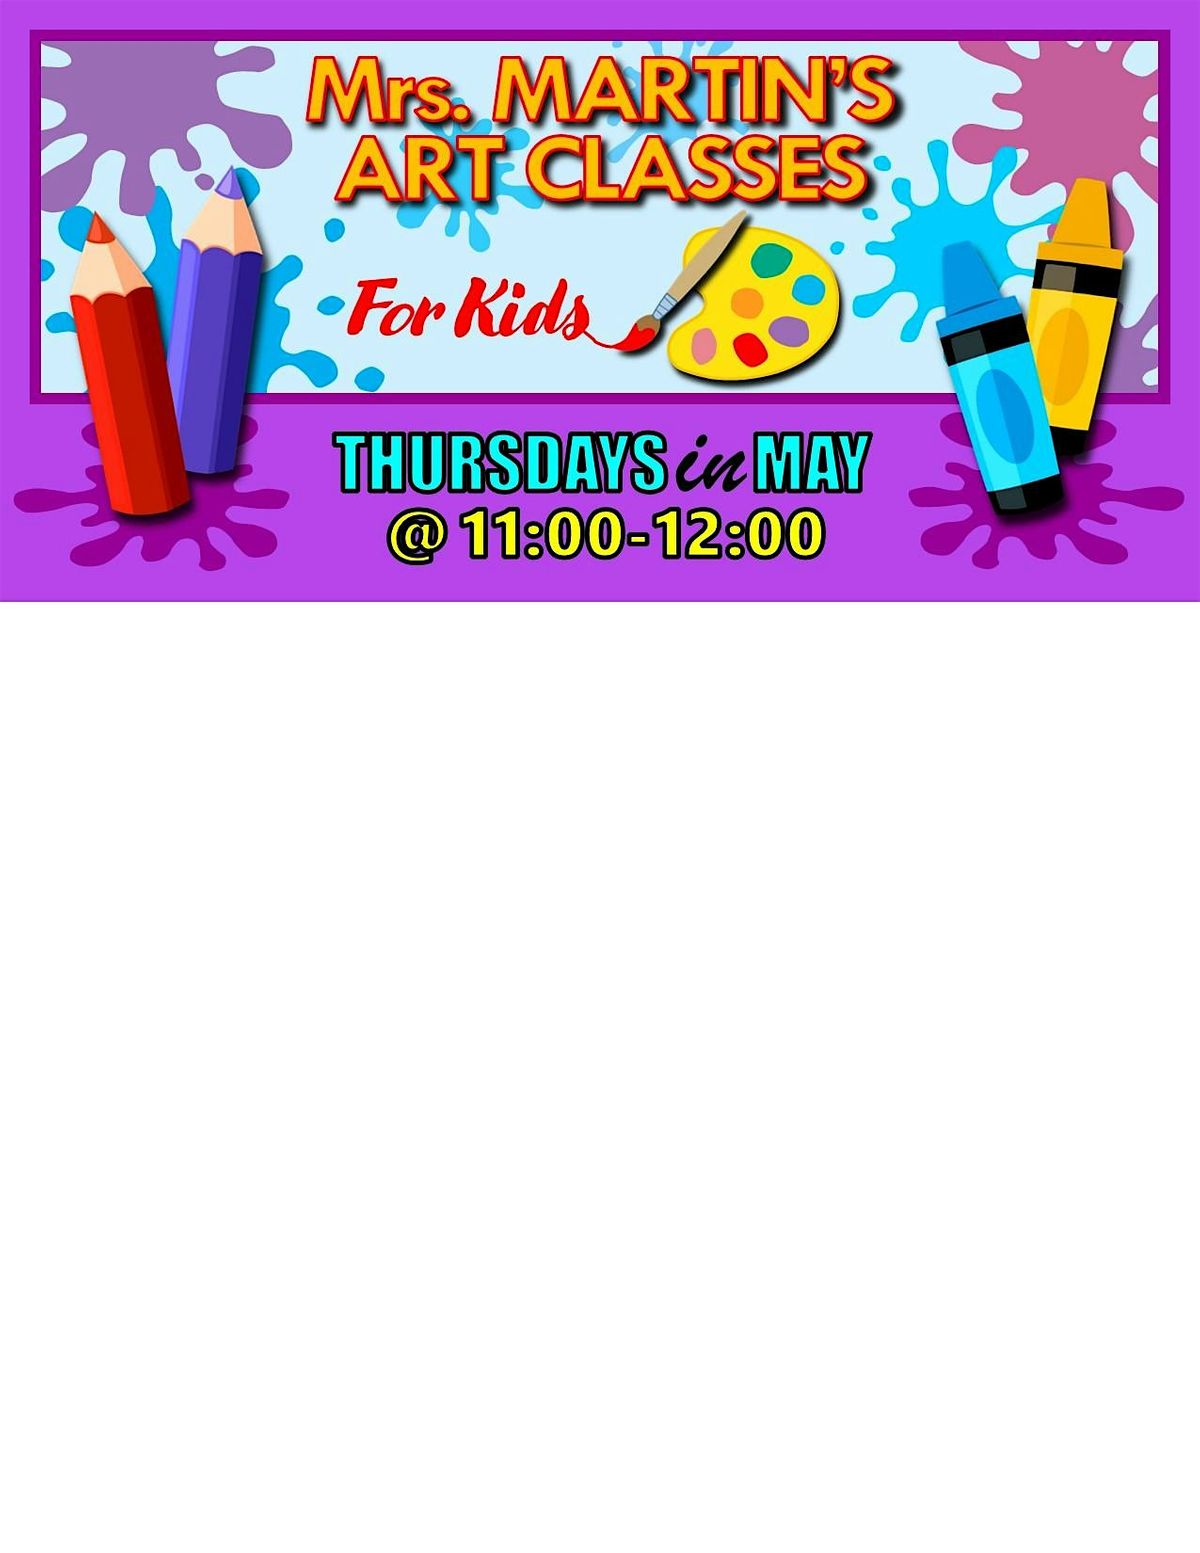 Mrs. Martin's Art Classes in MAY ~Thursdays @11:00-12:00